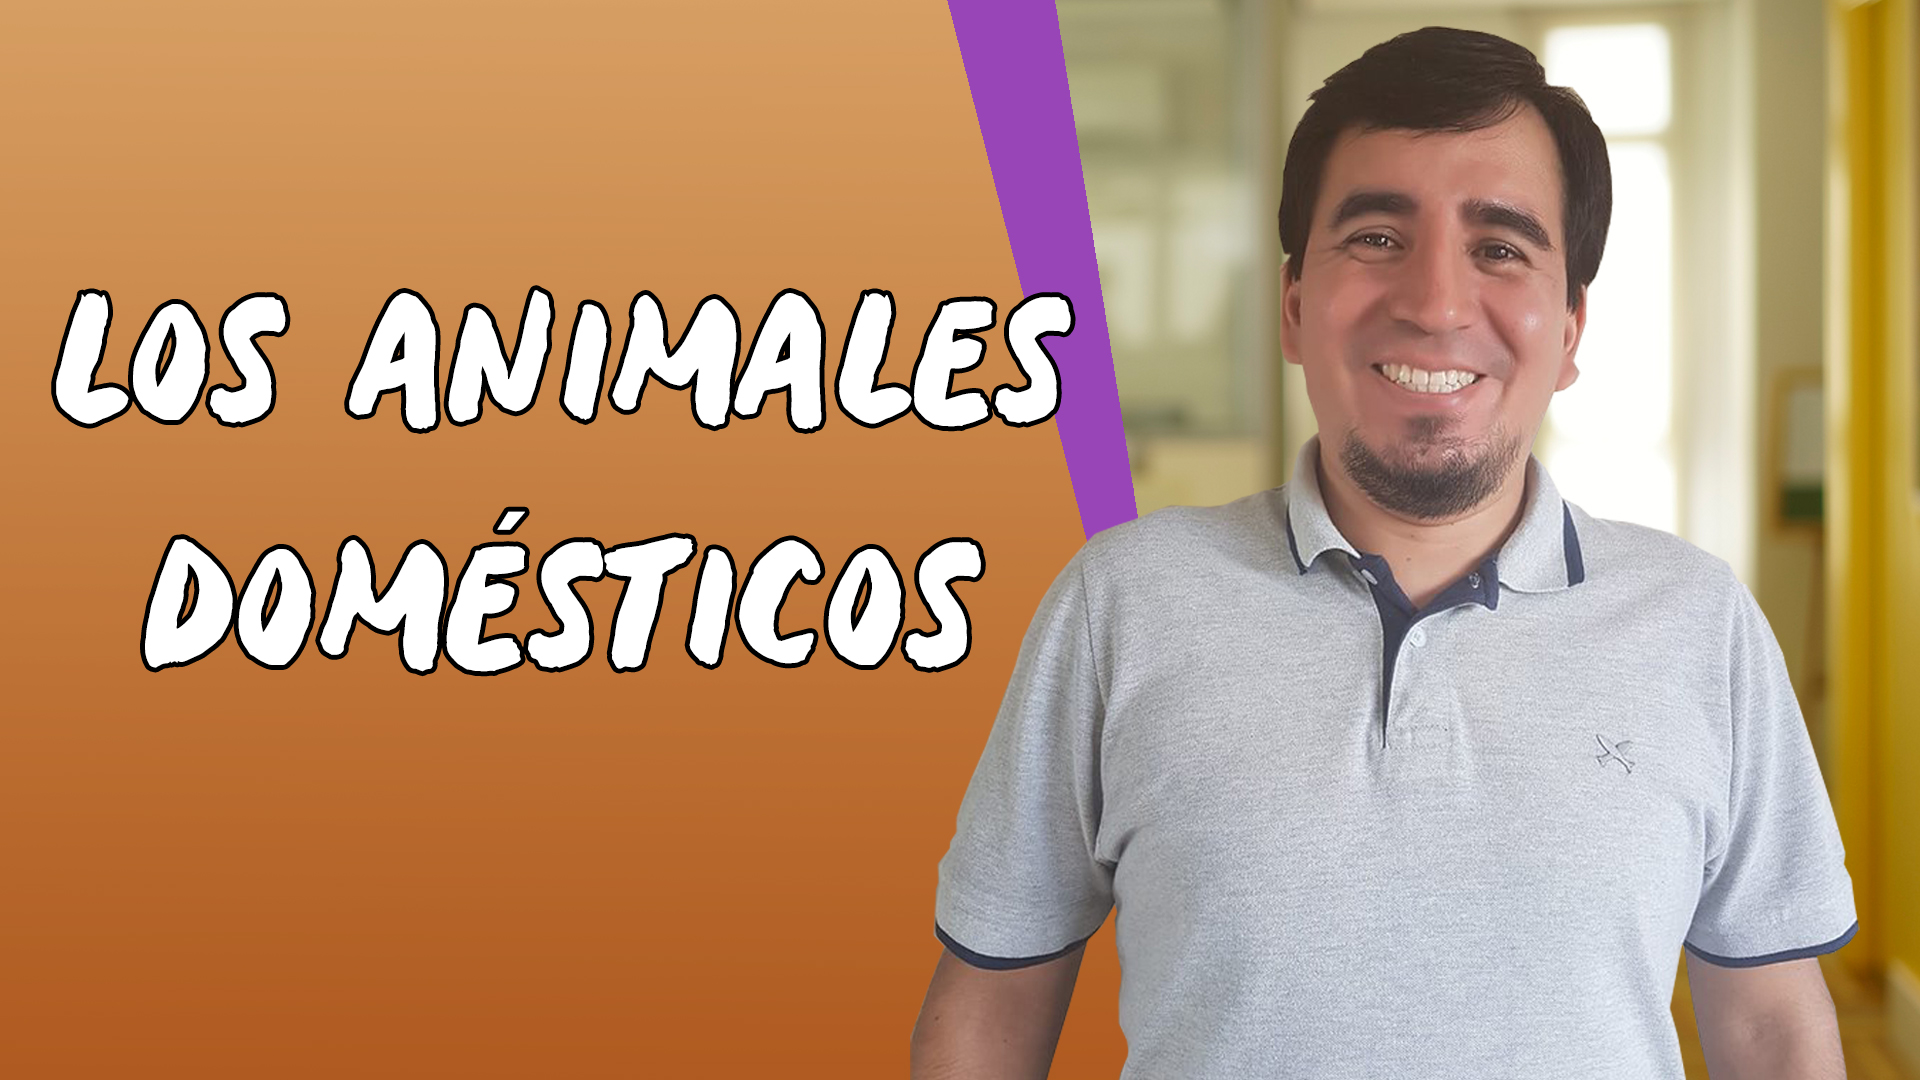 "Los Animales Domésticos" escrito sobre fundo laranja ao lado da imagem do professor